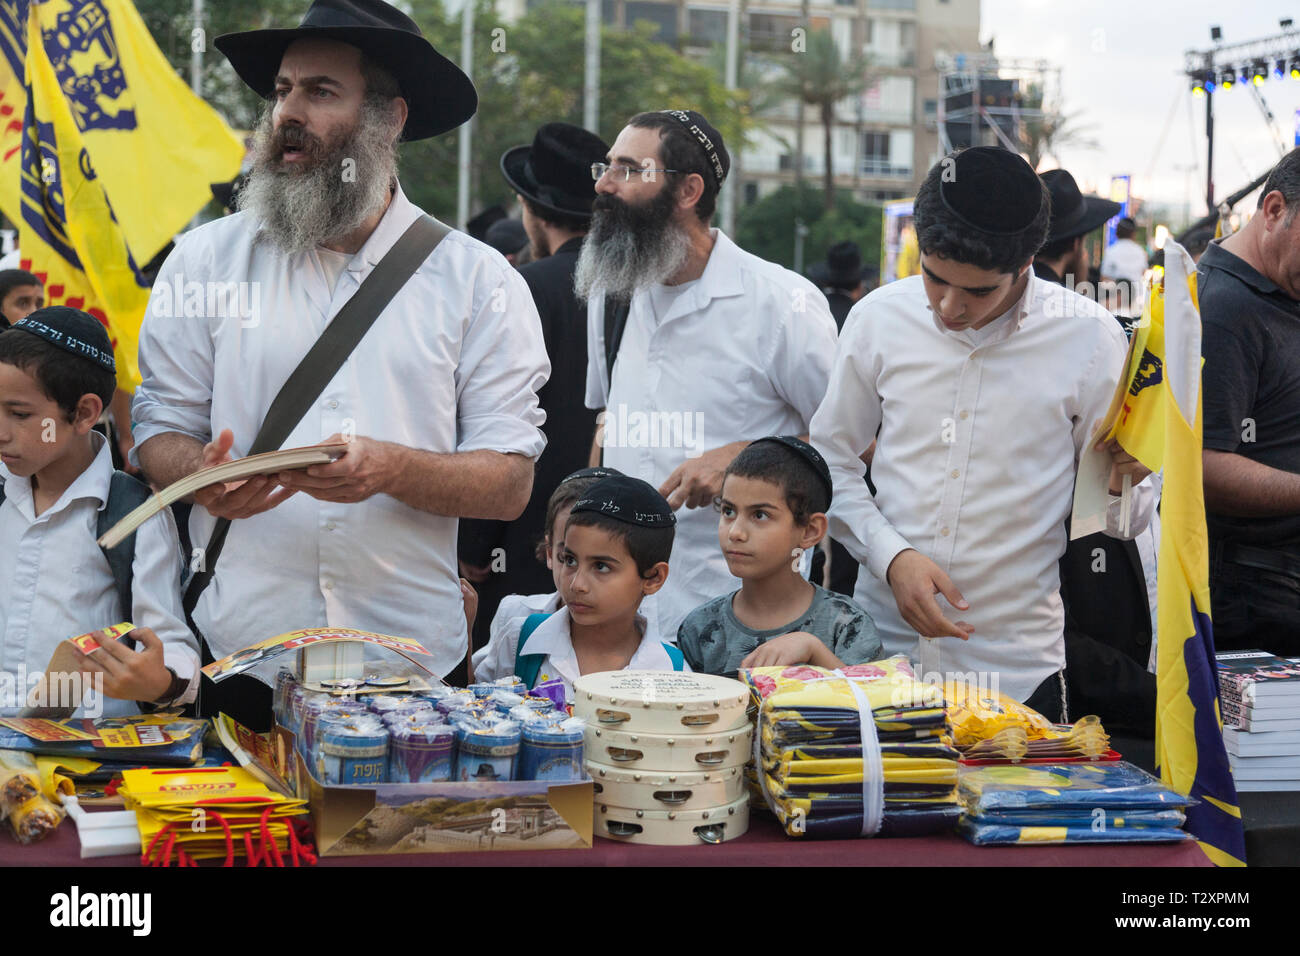 religious protest, Rabin Square, Tel Aviv, Israel Stock Photo